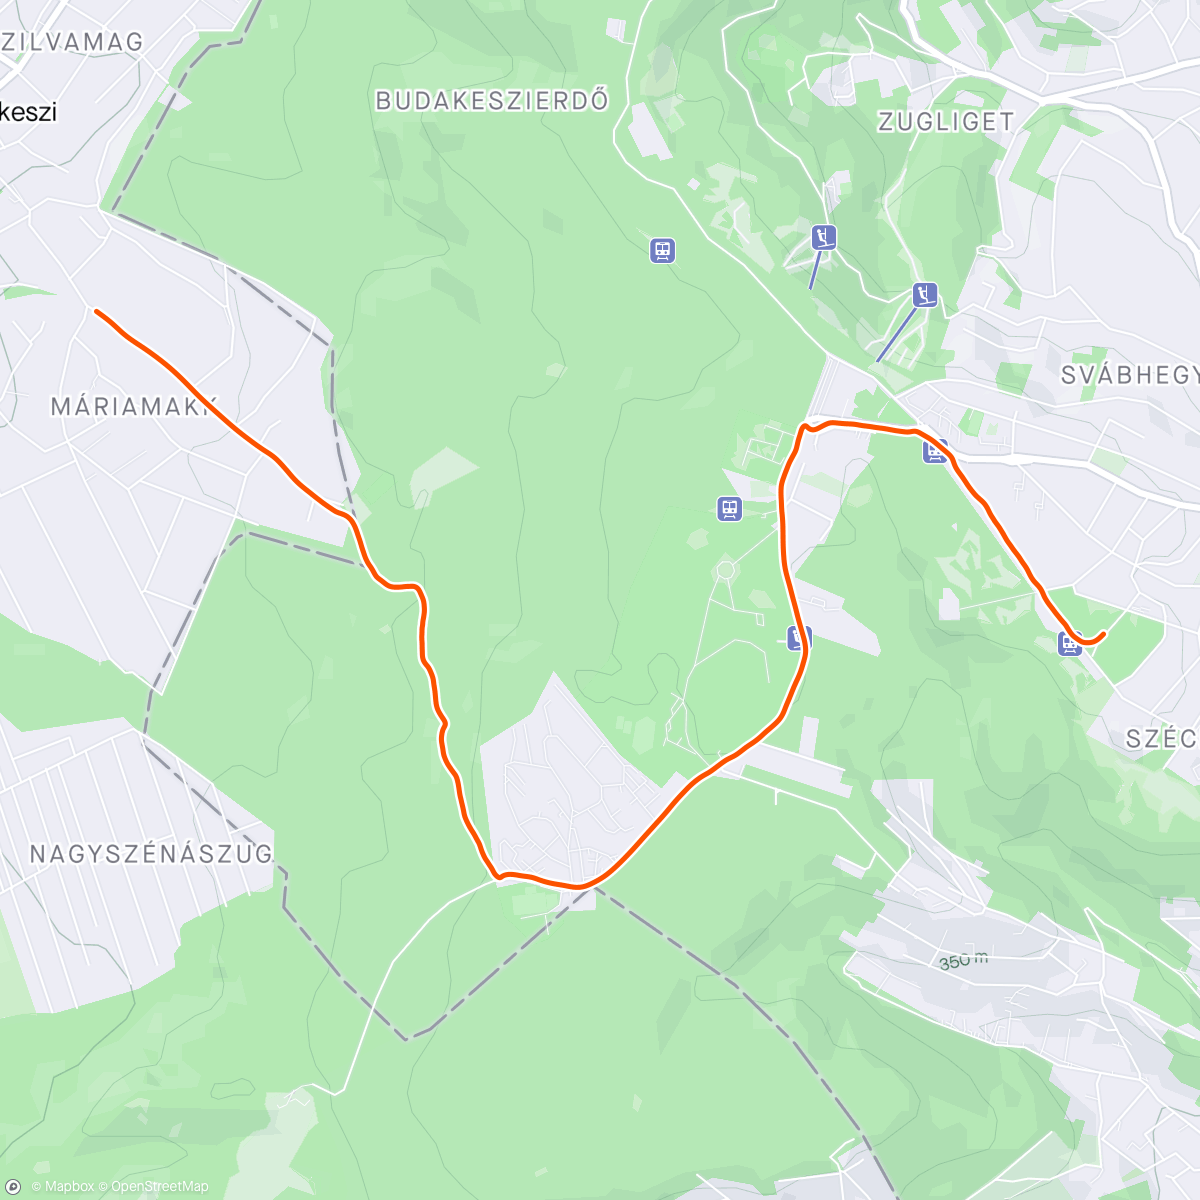 「Buda coulda woulda D3: Budakeszierdő Ride」活動的地圖